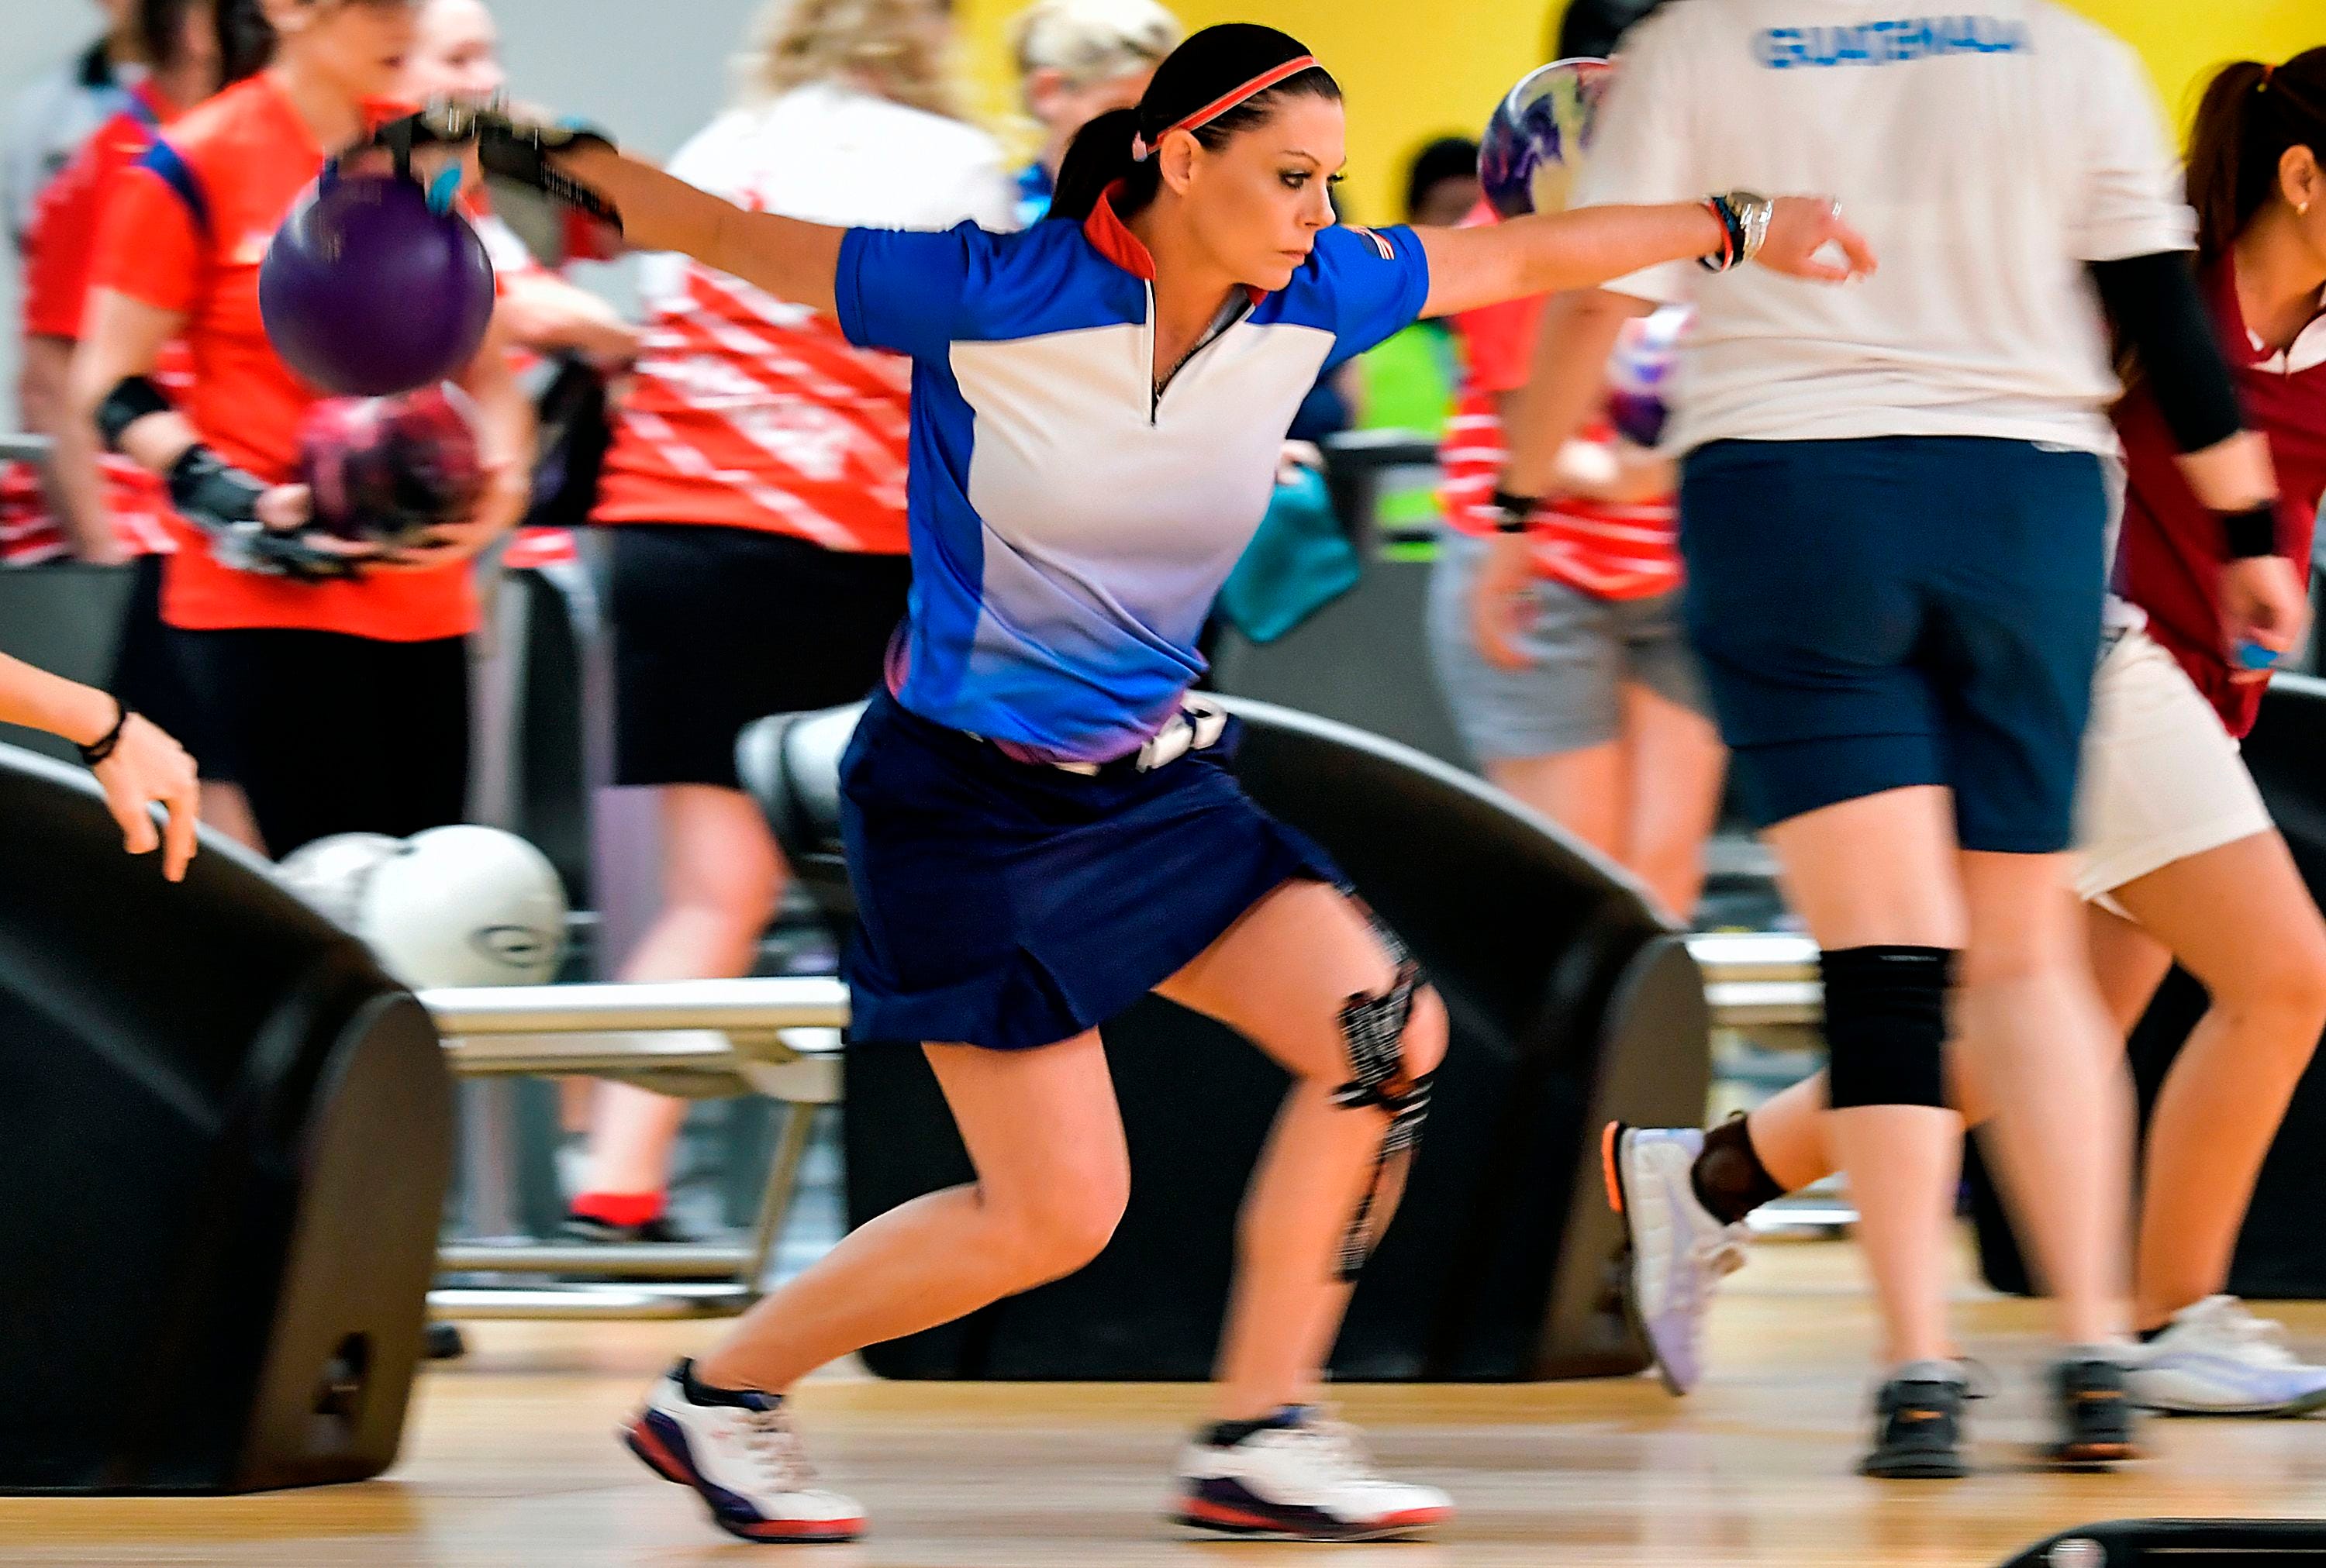 Women's bowling is the NCAA's hidden gem